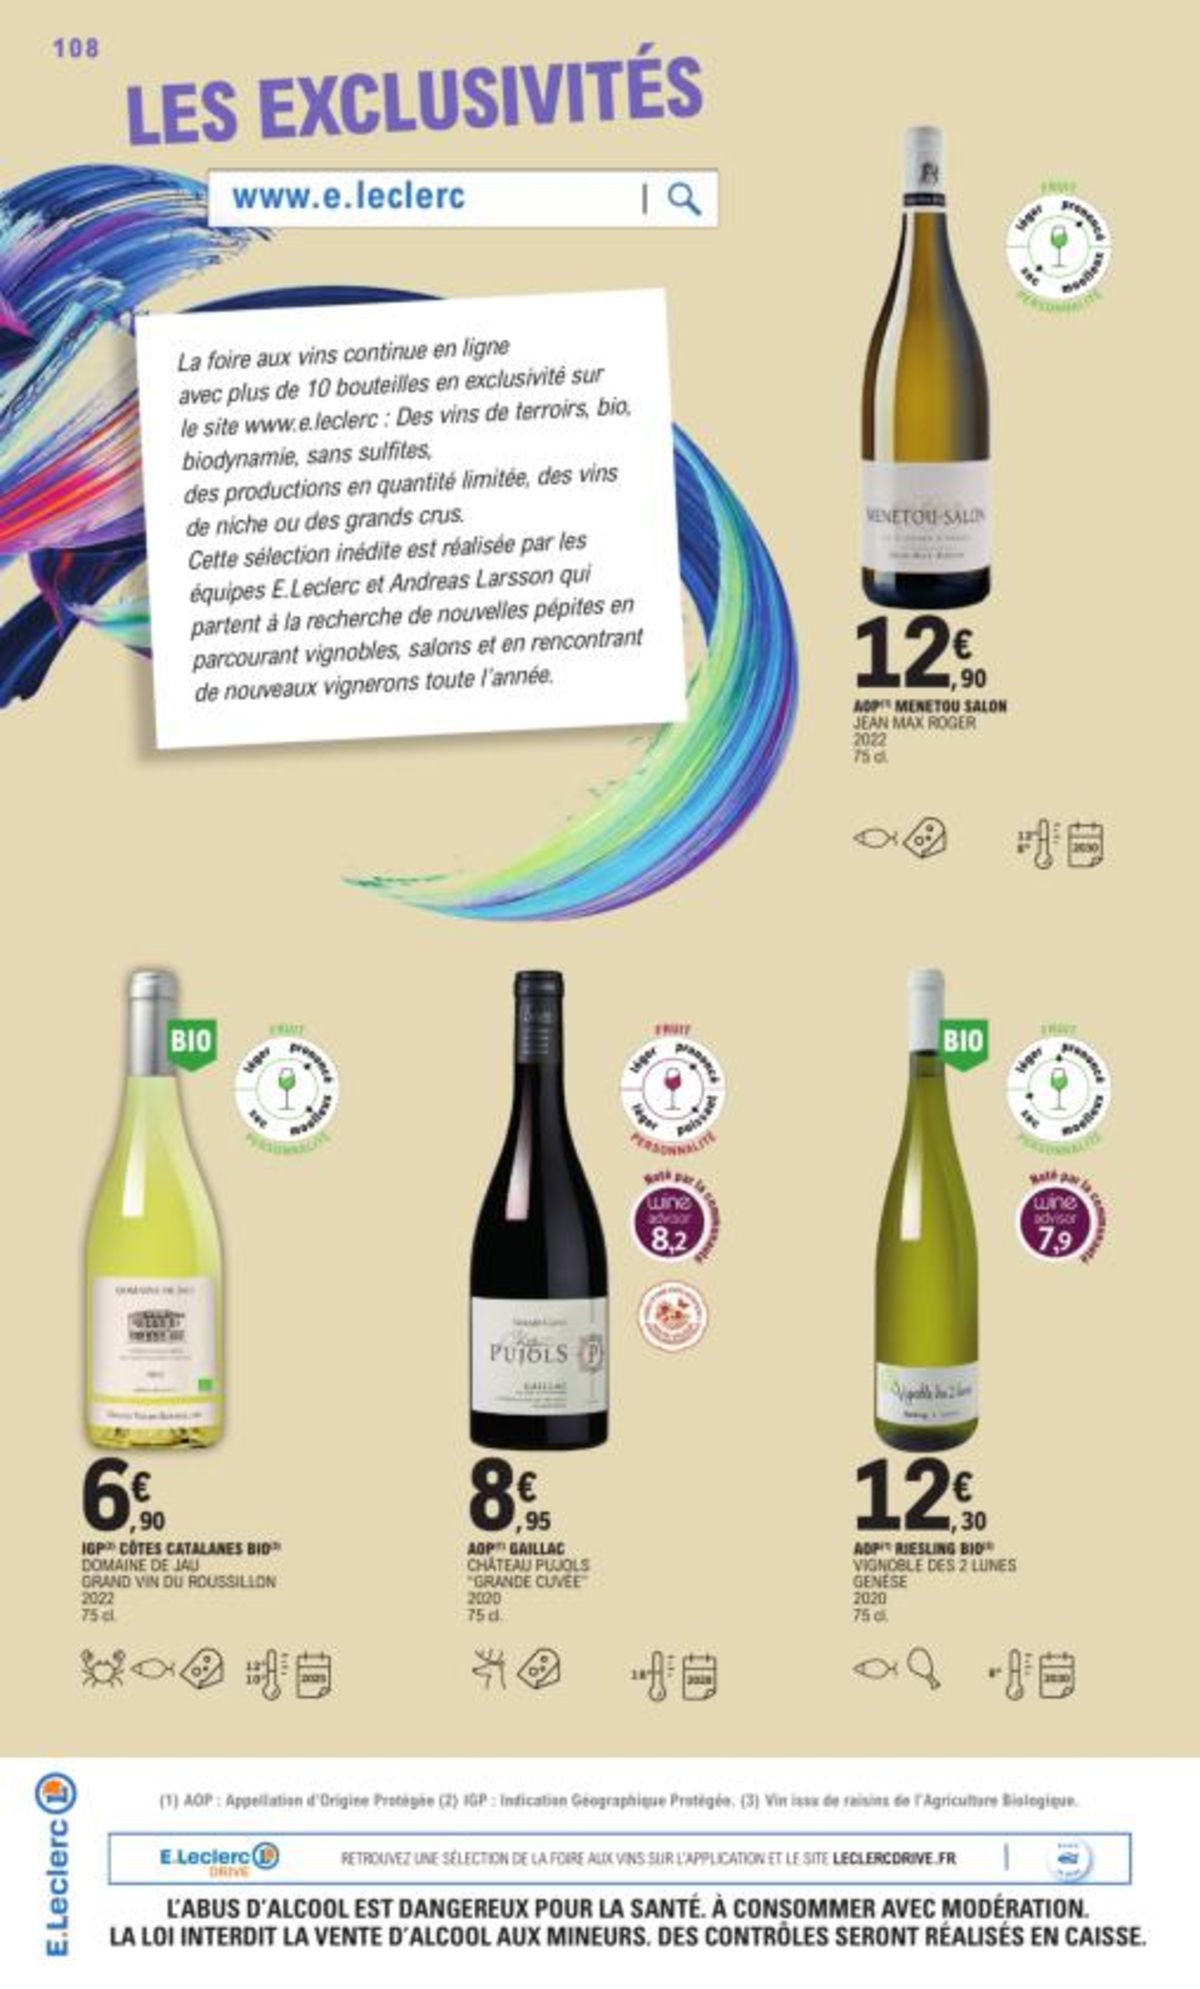 Catalogue Foire Aux Vins - Mixte, page 00011